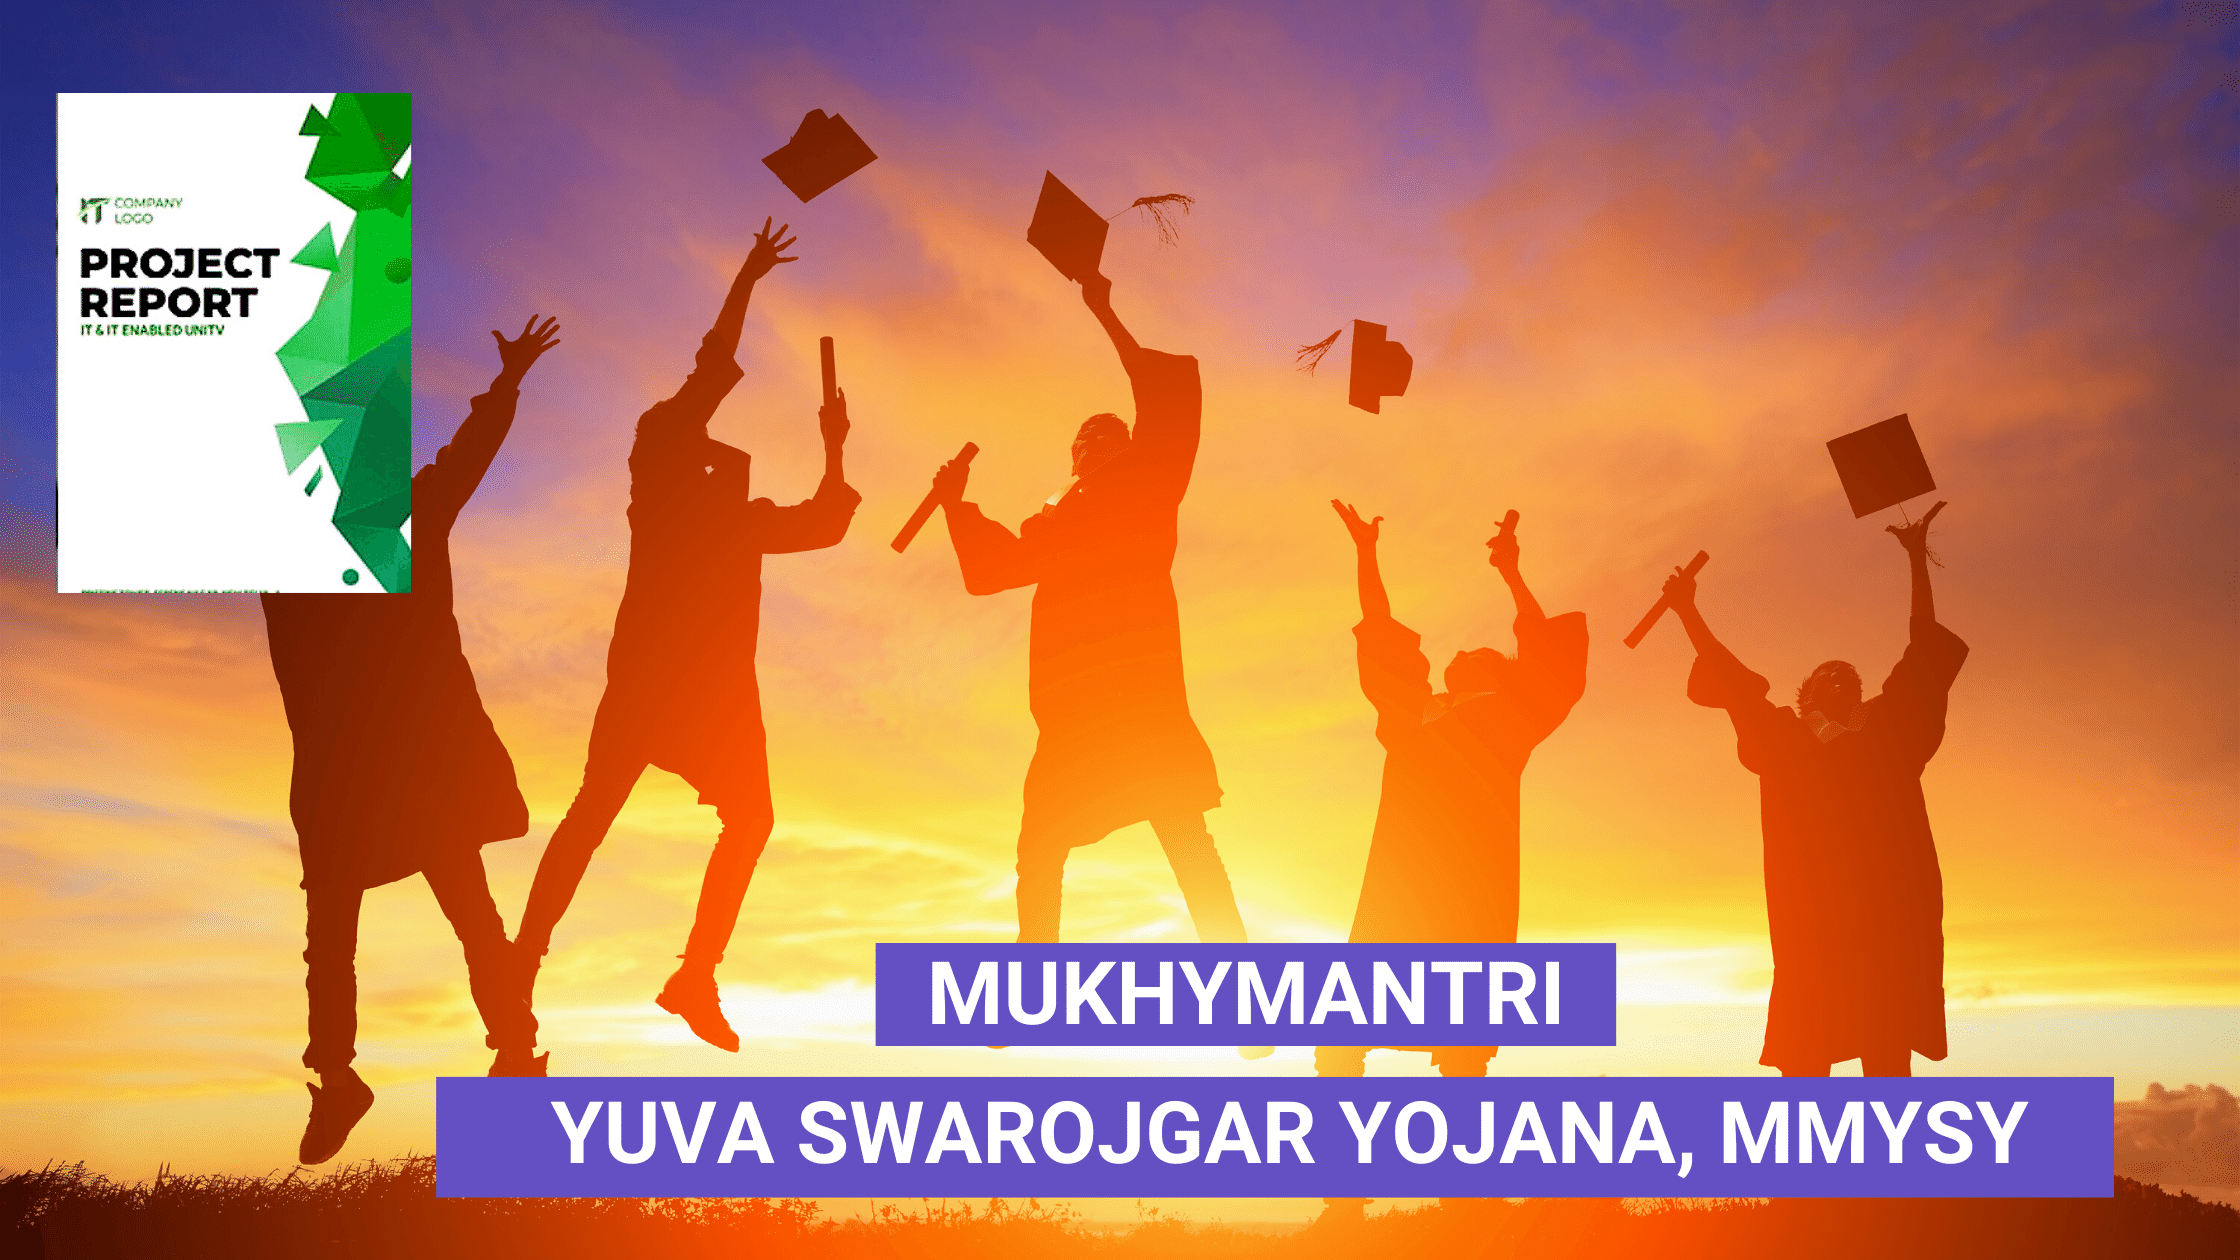 Mukhymantri Yuva Swarojgar Yojana, MMYSY